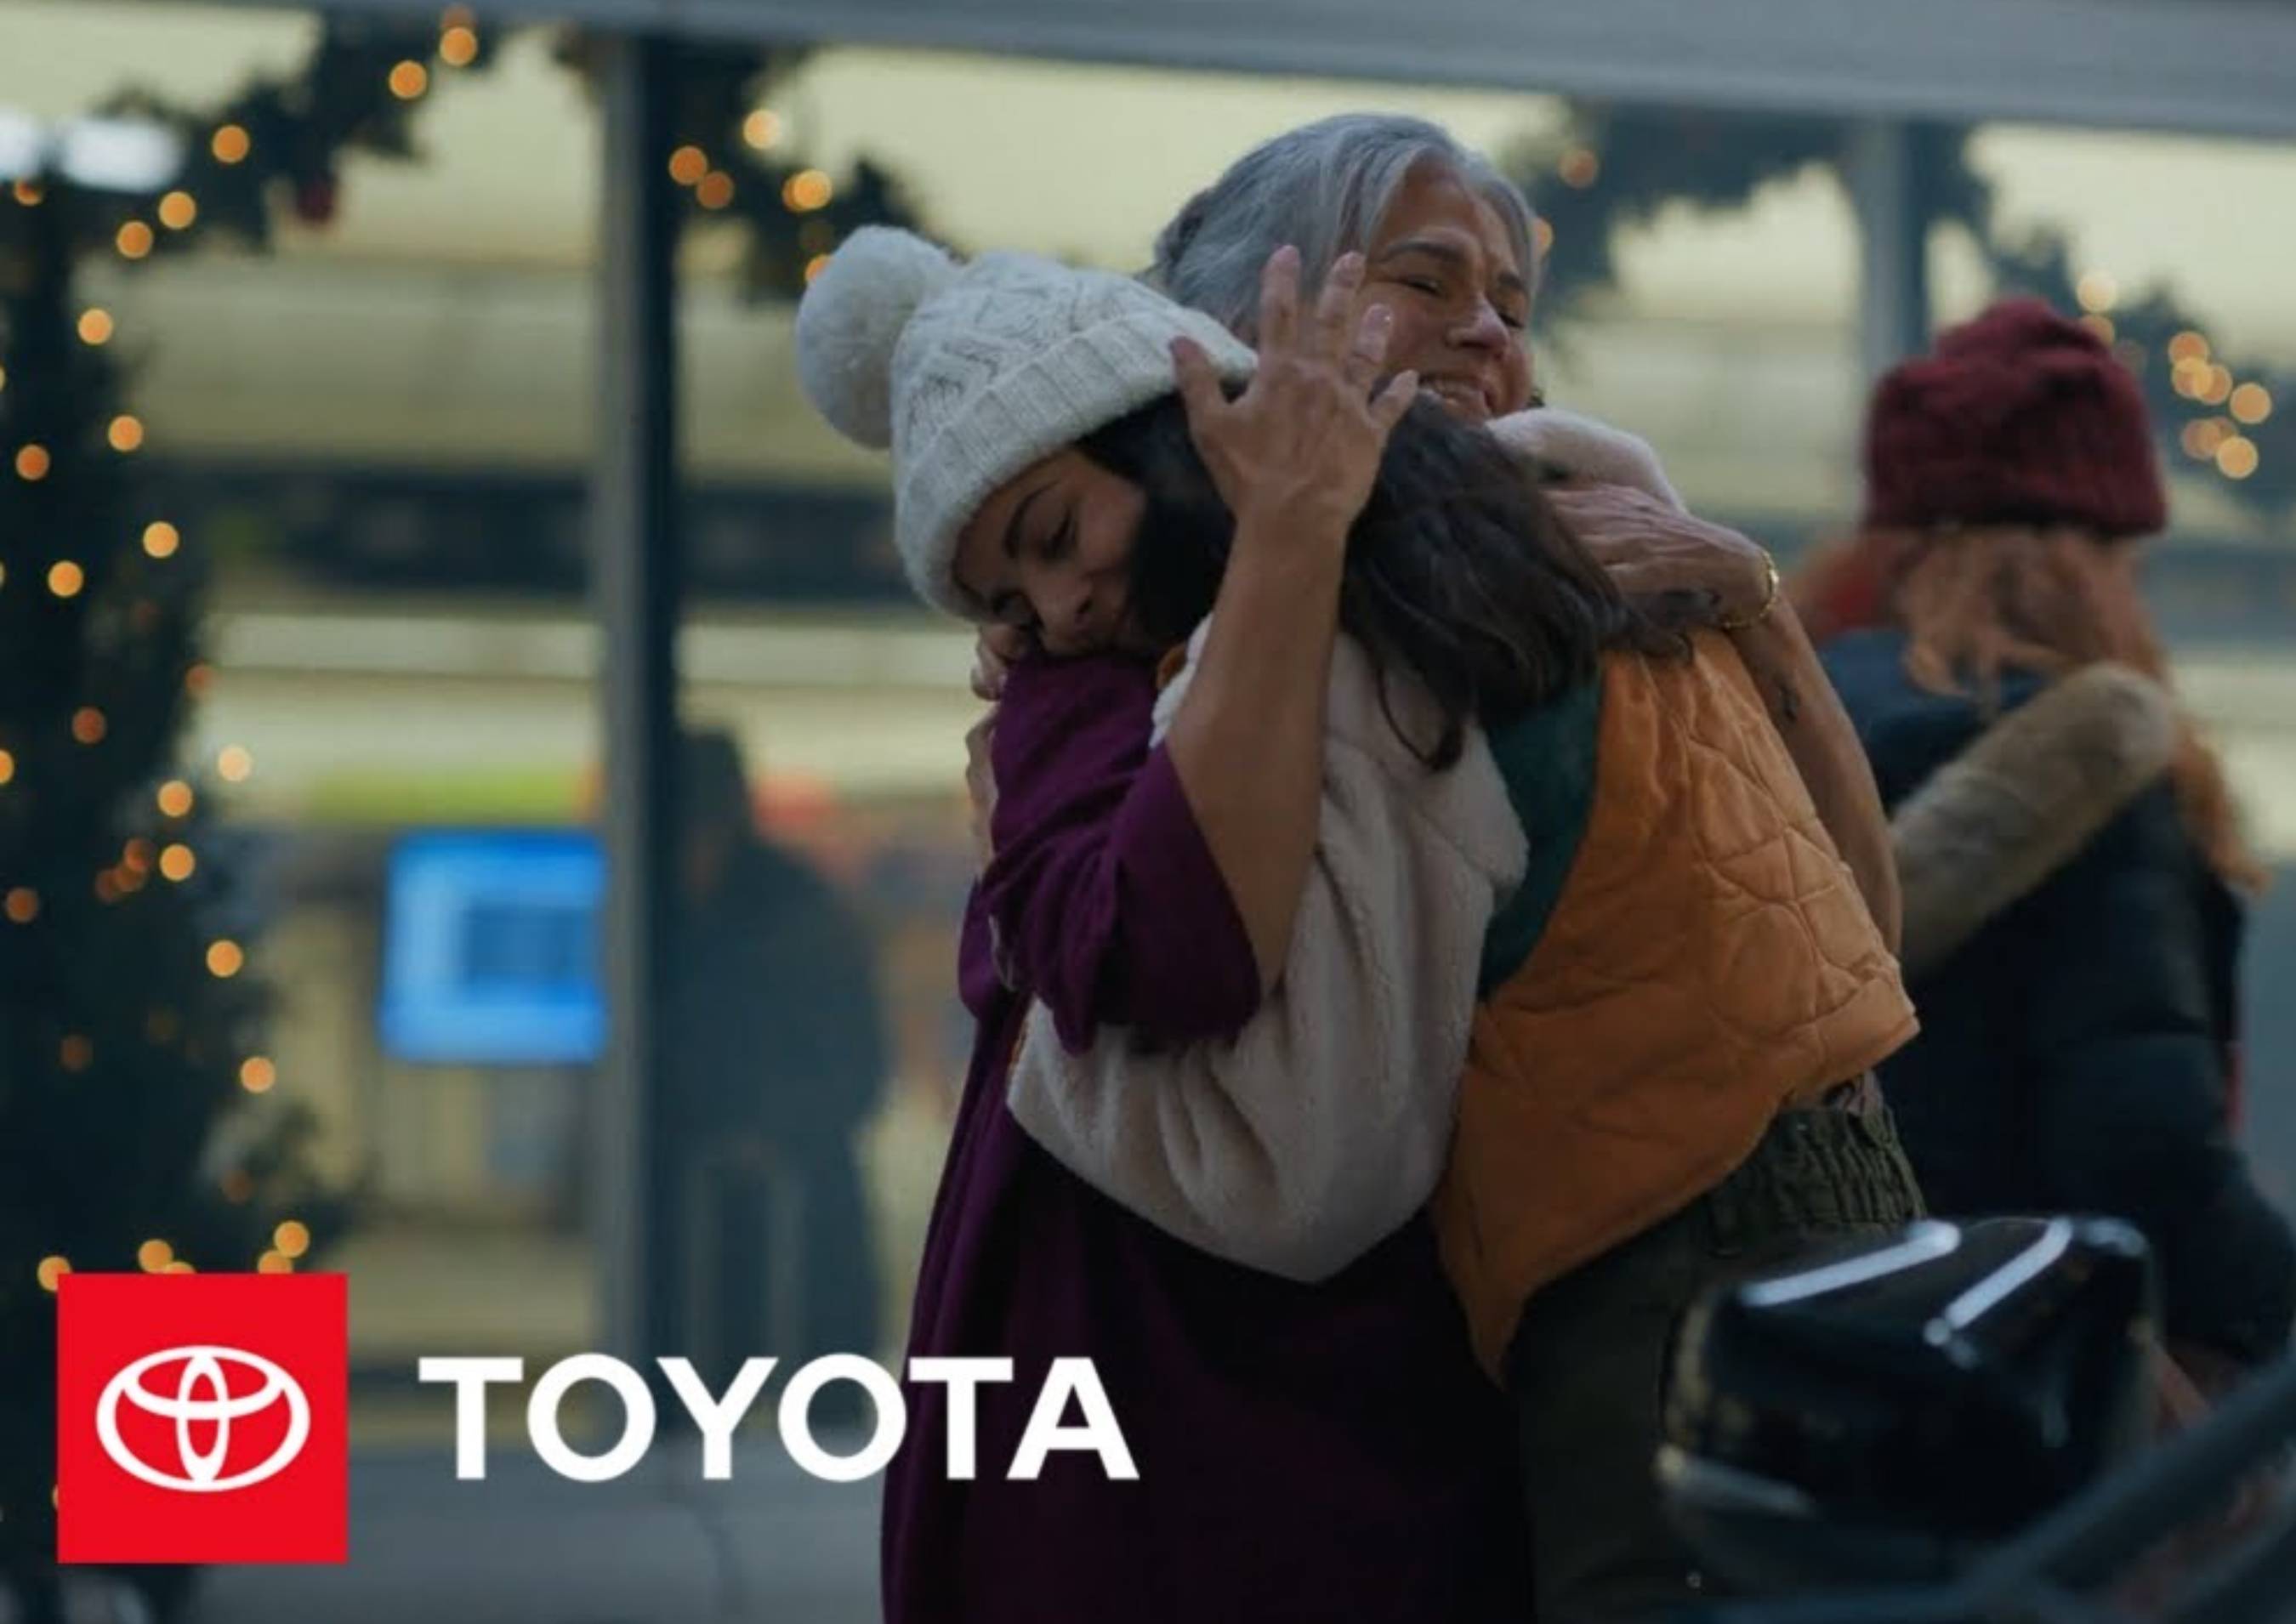 El anuncio navideño de Toyota "Arrivals", desarrollado por Conill Advertising comparte un mensaje de unión y reencuentro durante las fiestas.